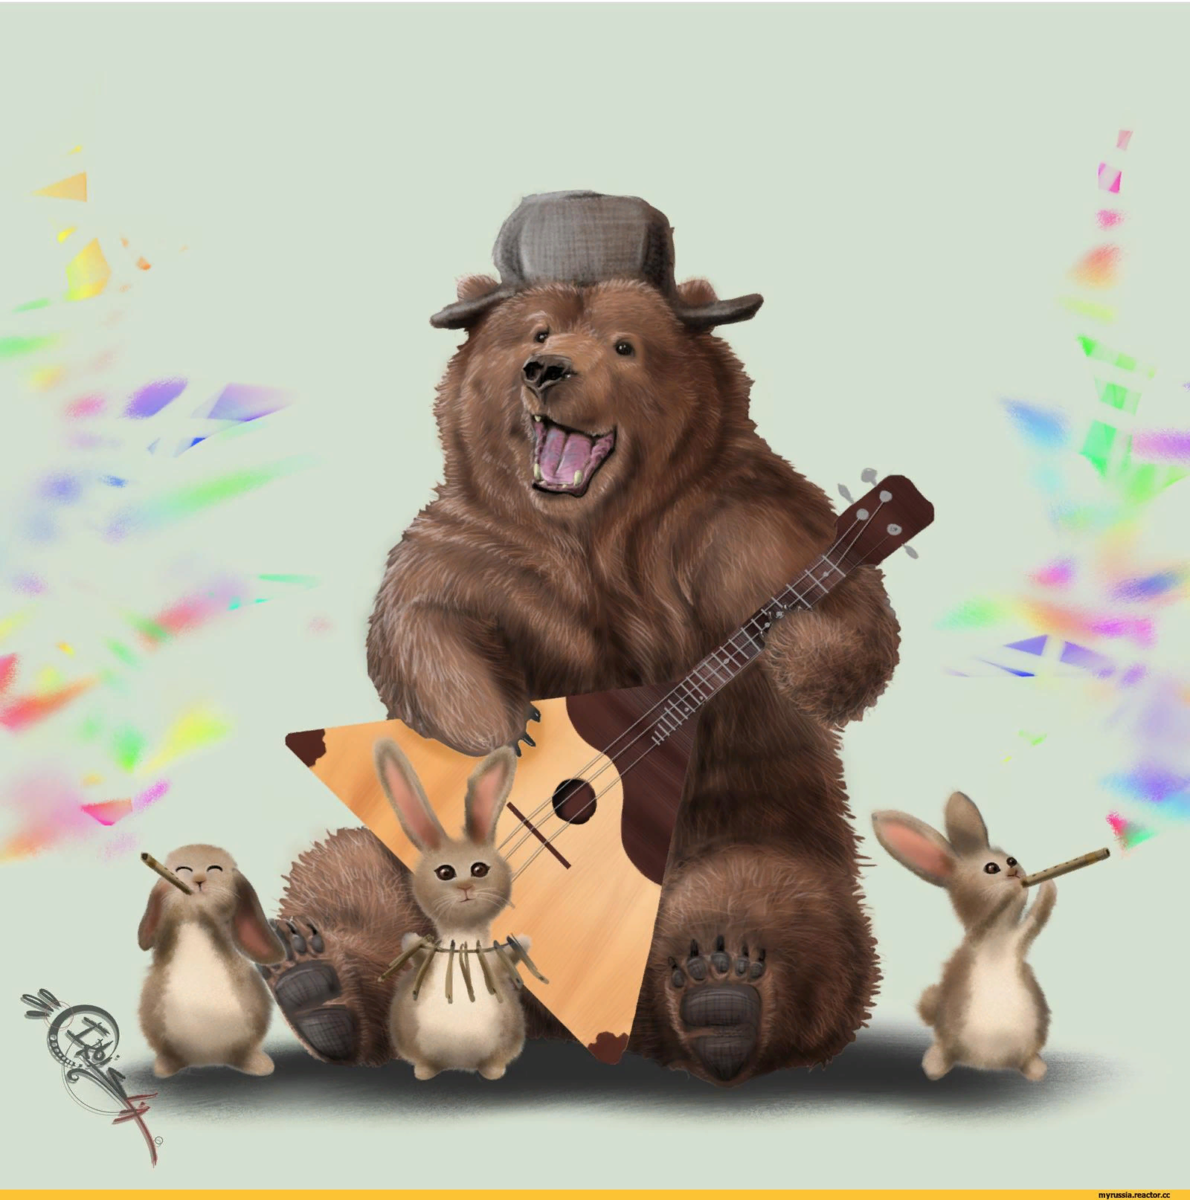 Mishka balalaika. Русский в ушанке с балалайкой и медведем. Медведь балу.